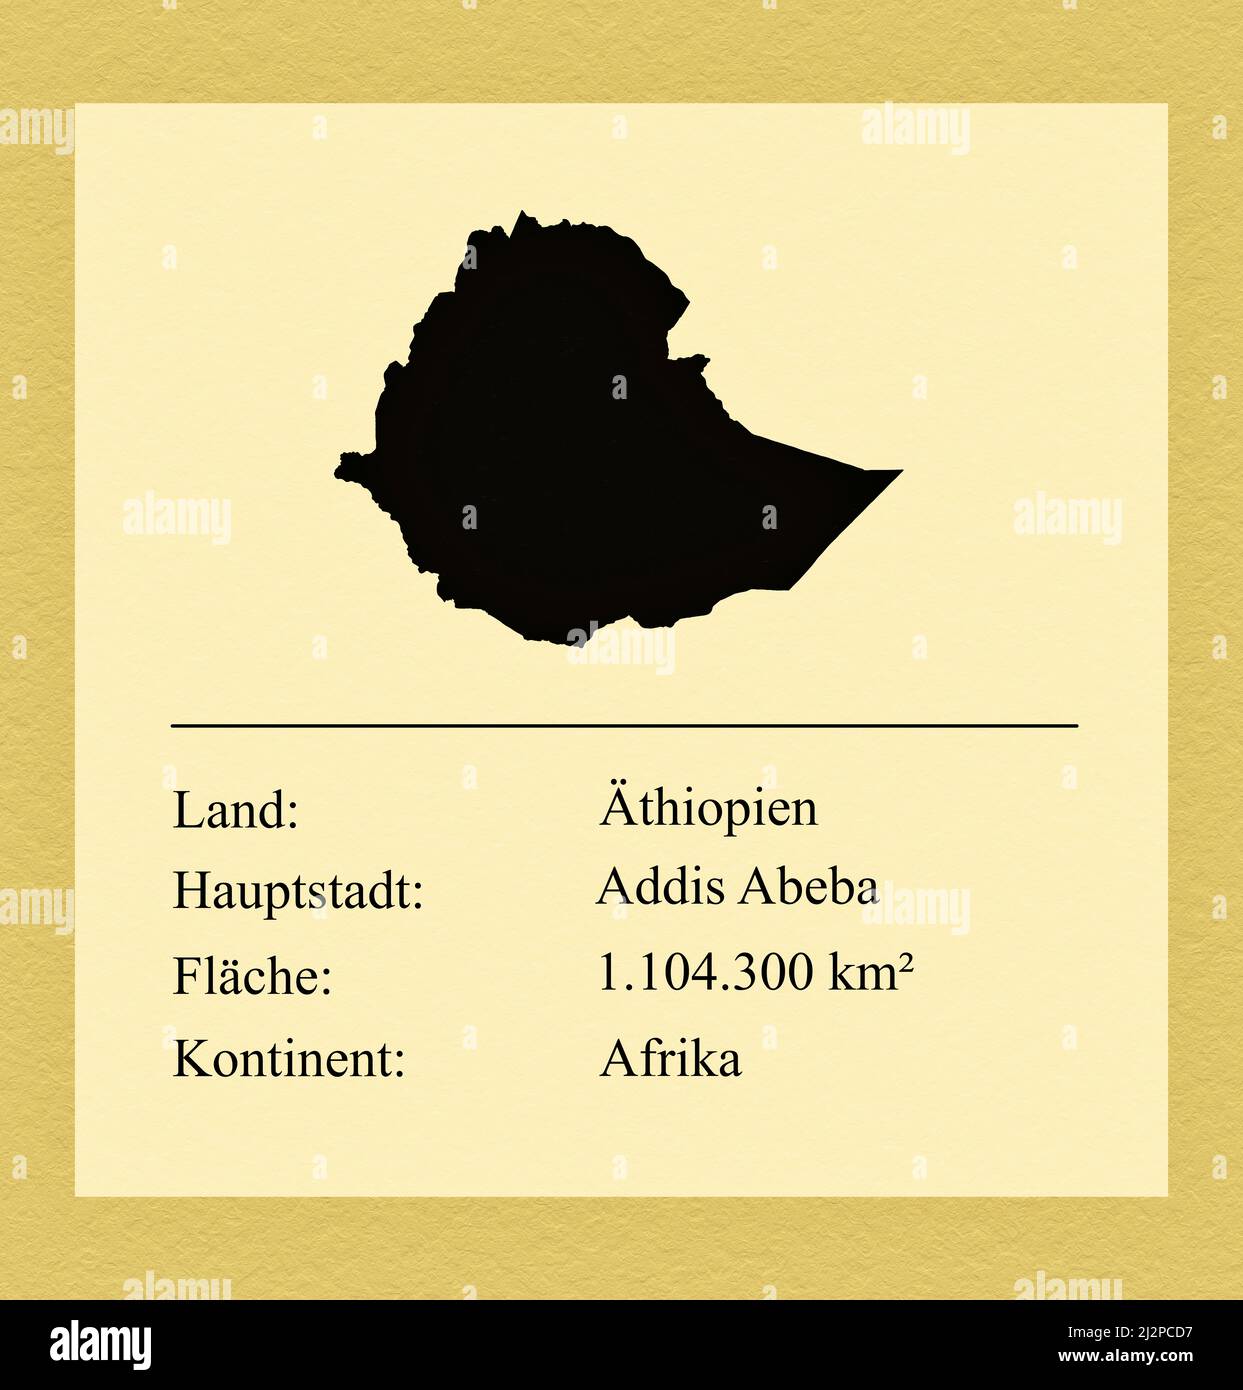 Umrisse des Landes Äthiopien, darunter ein kleiner Steckbrief mit Ländernamen, Hauptstadt, Fläche und Kontinent Foto Stock